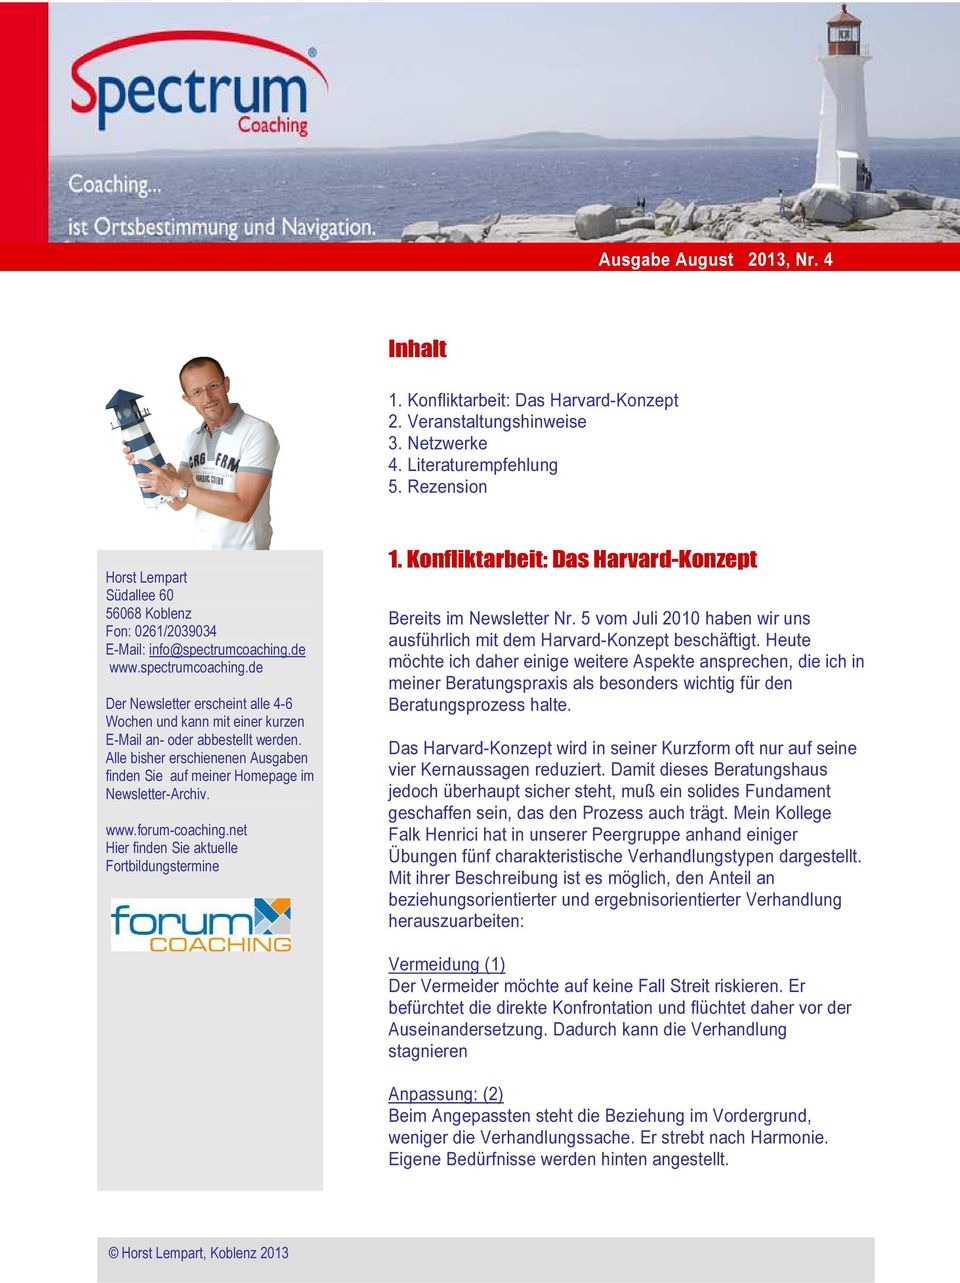 de www.spectrumcoaching.de Der Newsletter erscheint alle 4-6 Wochen und kann mit einer kurzen E-Mail an- oder abbestellt werden.